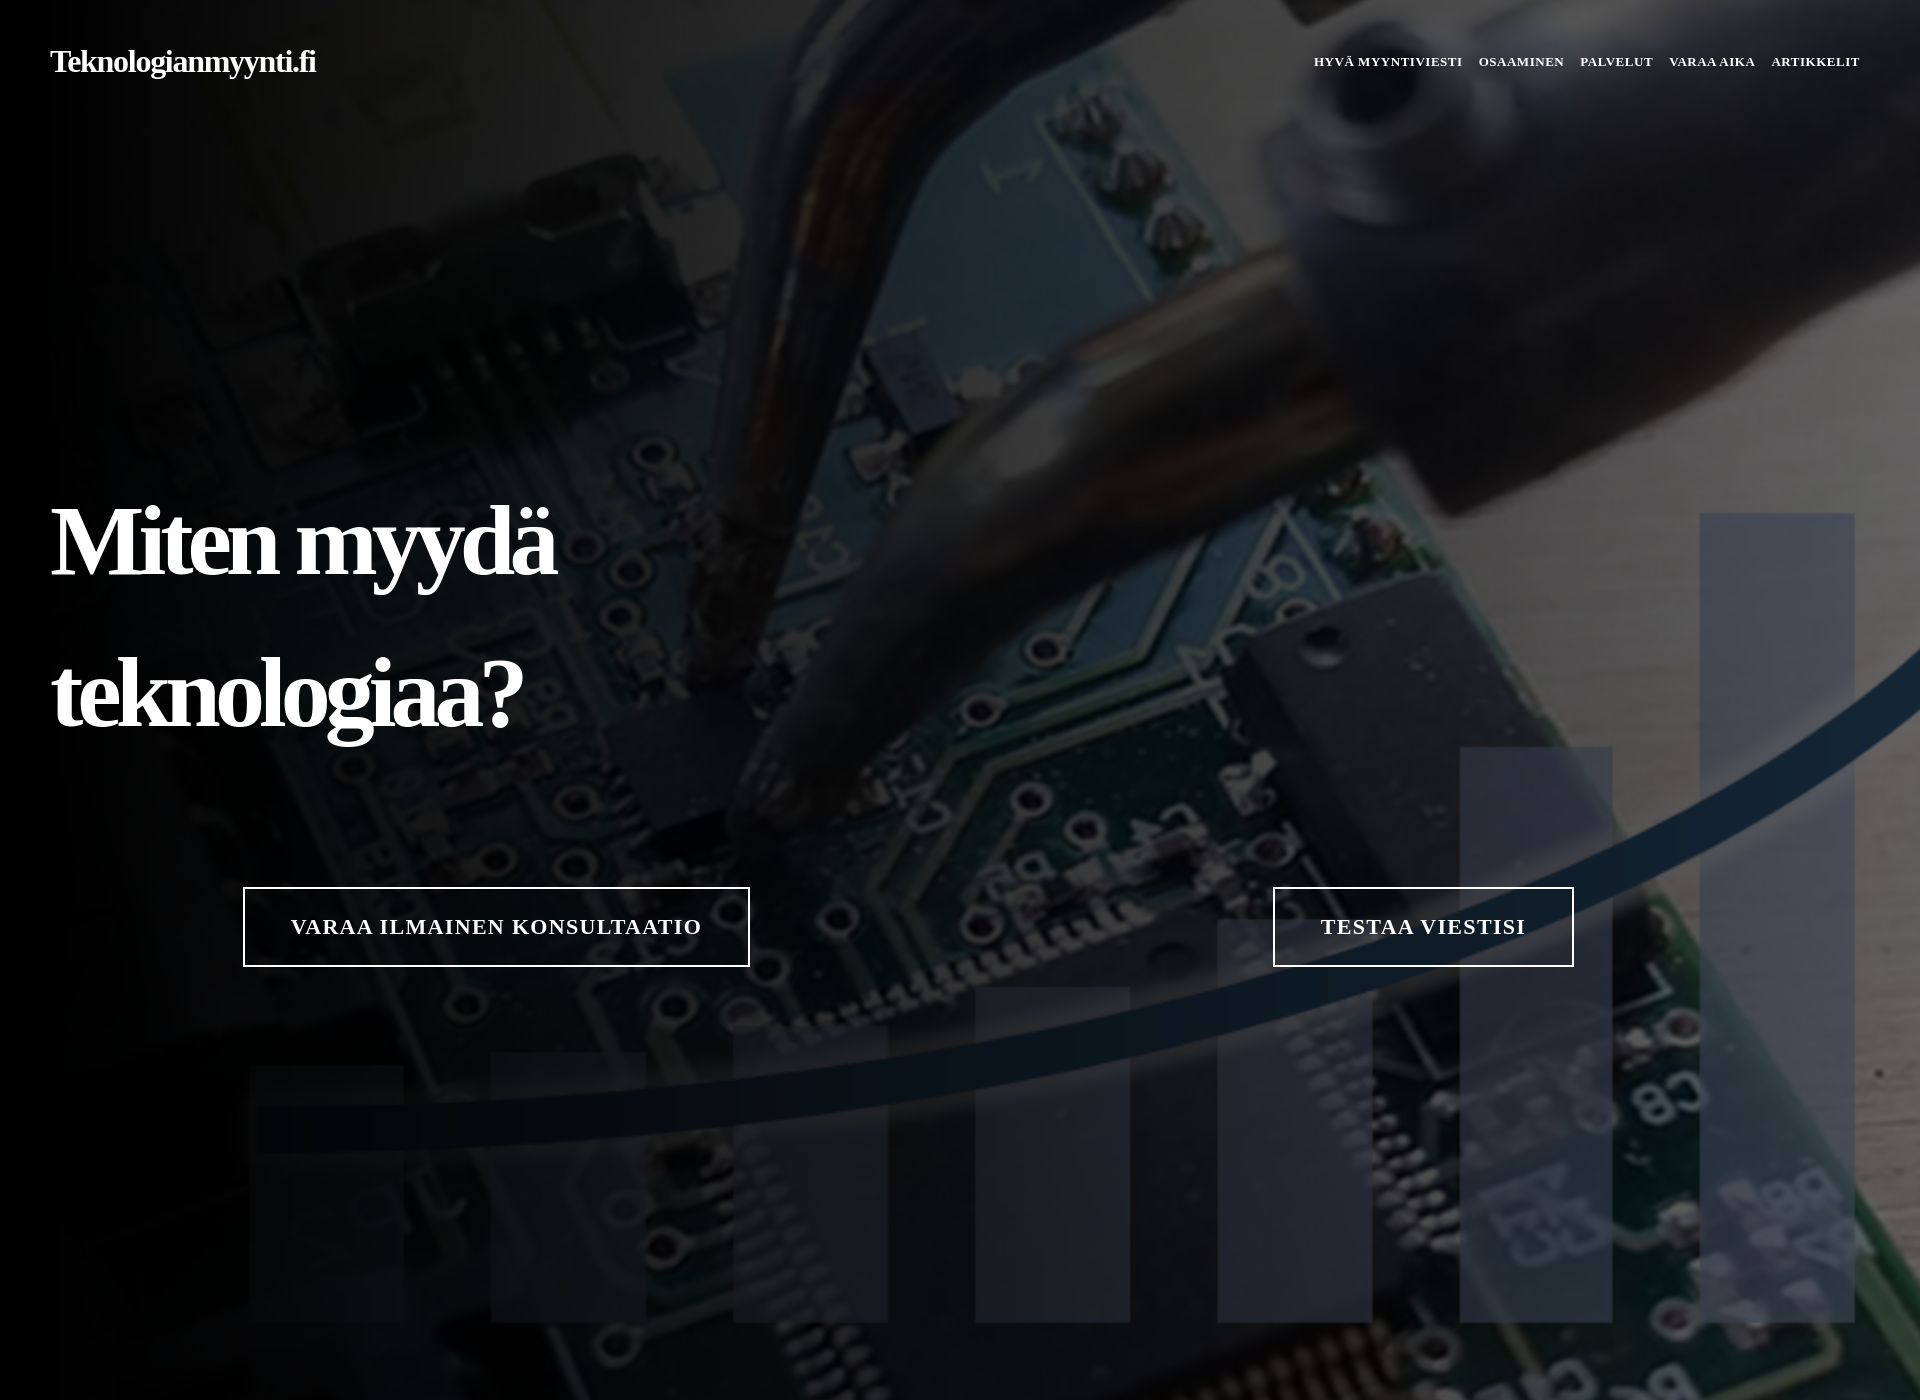 Näyttökuva teknologianmyynti.fi